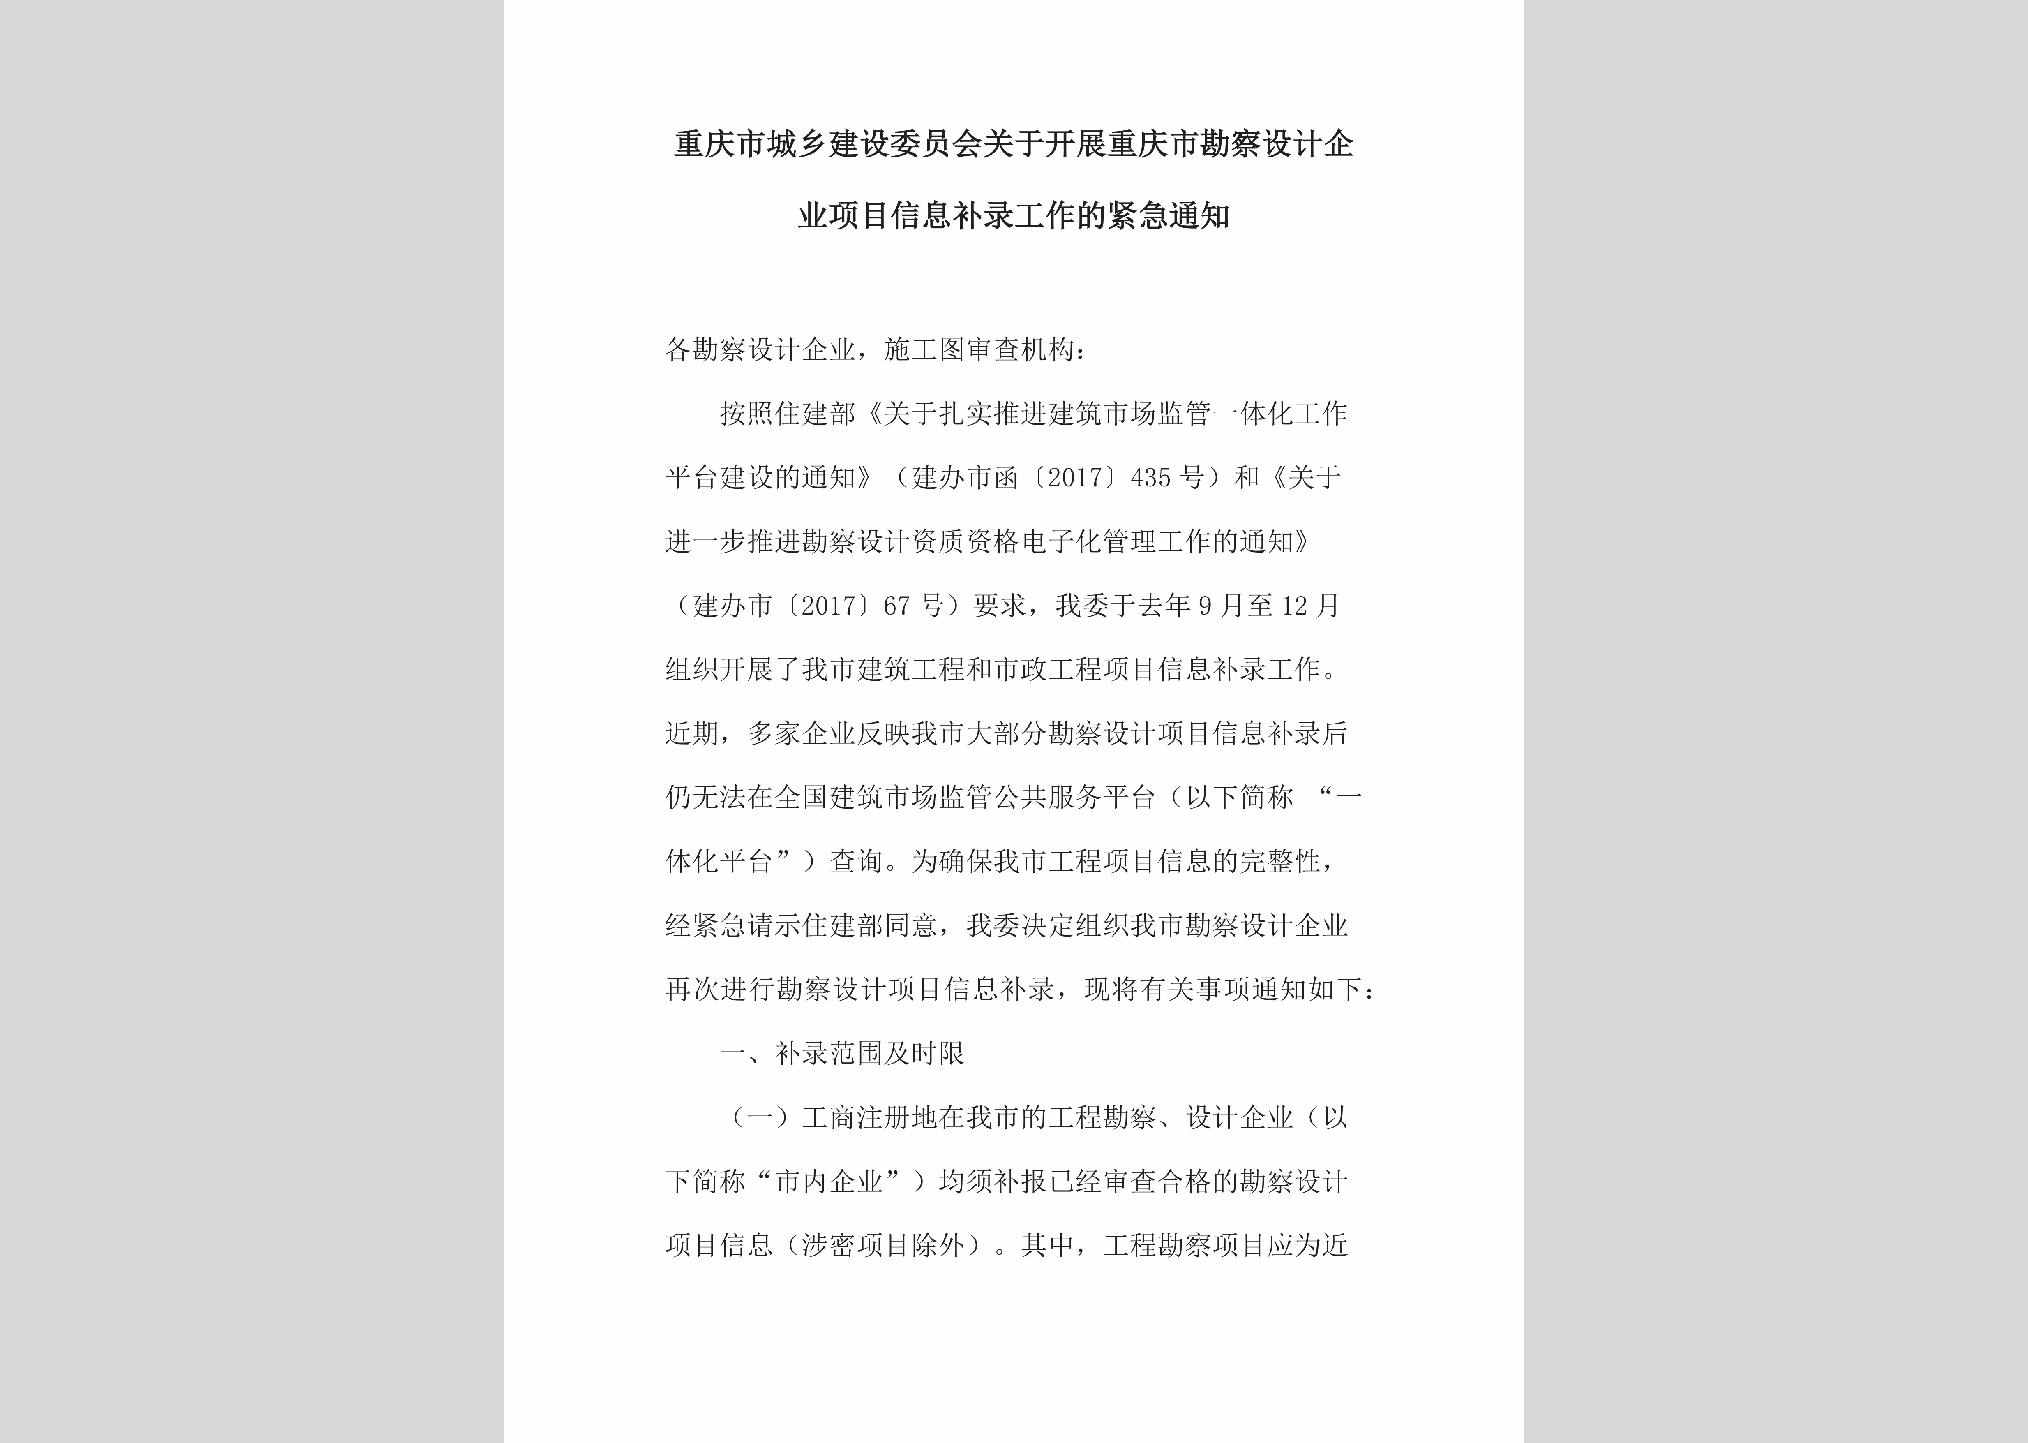 CQ-QYXMXXBL-2018：关于开展重庆市勘察设计企业项目信息补录工作的紧急通知